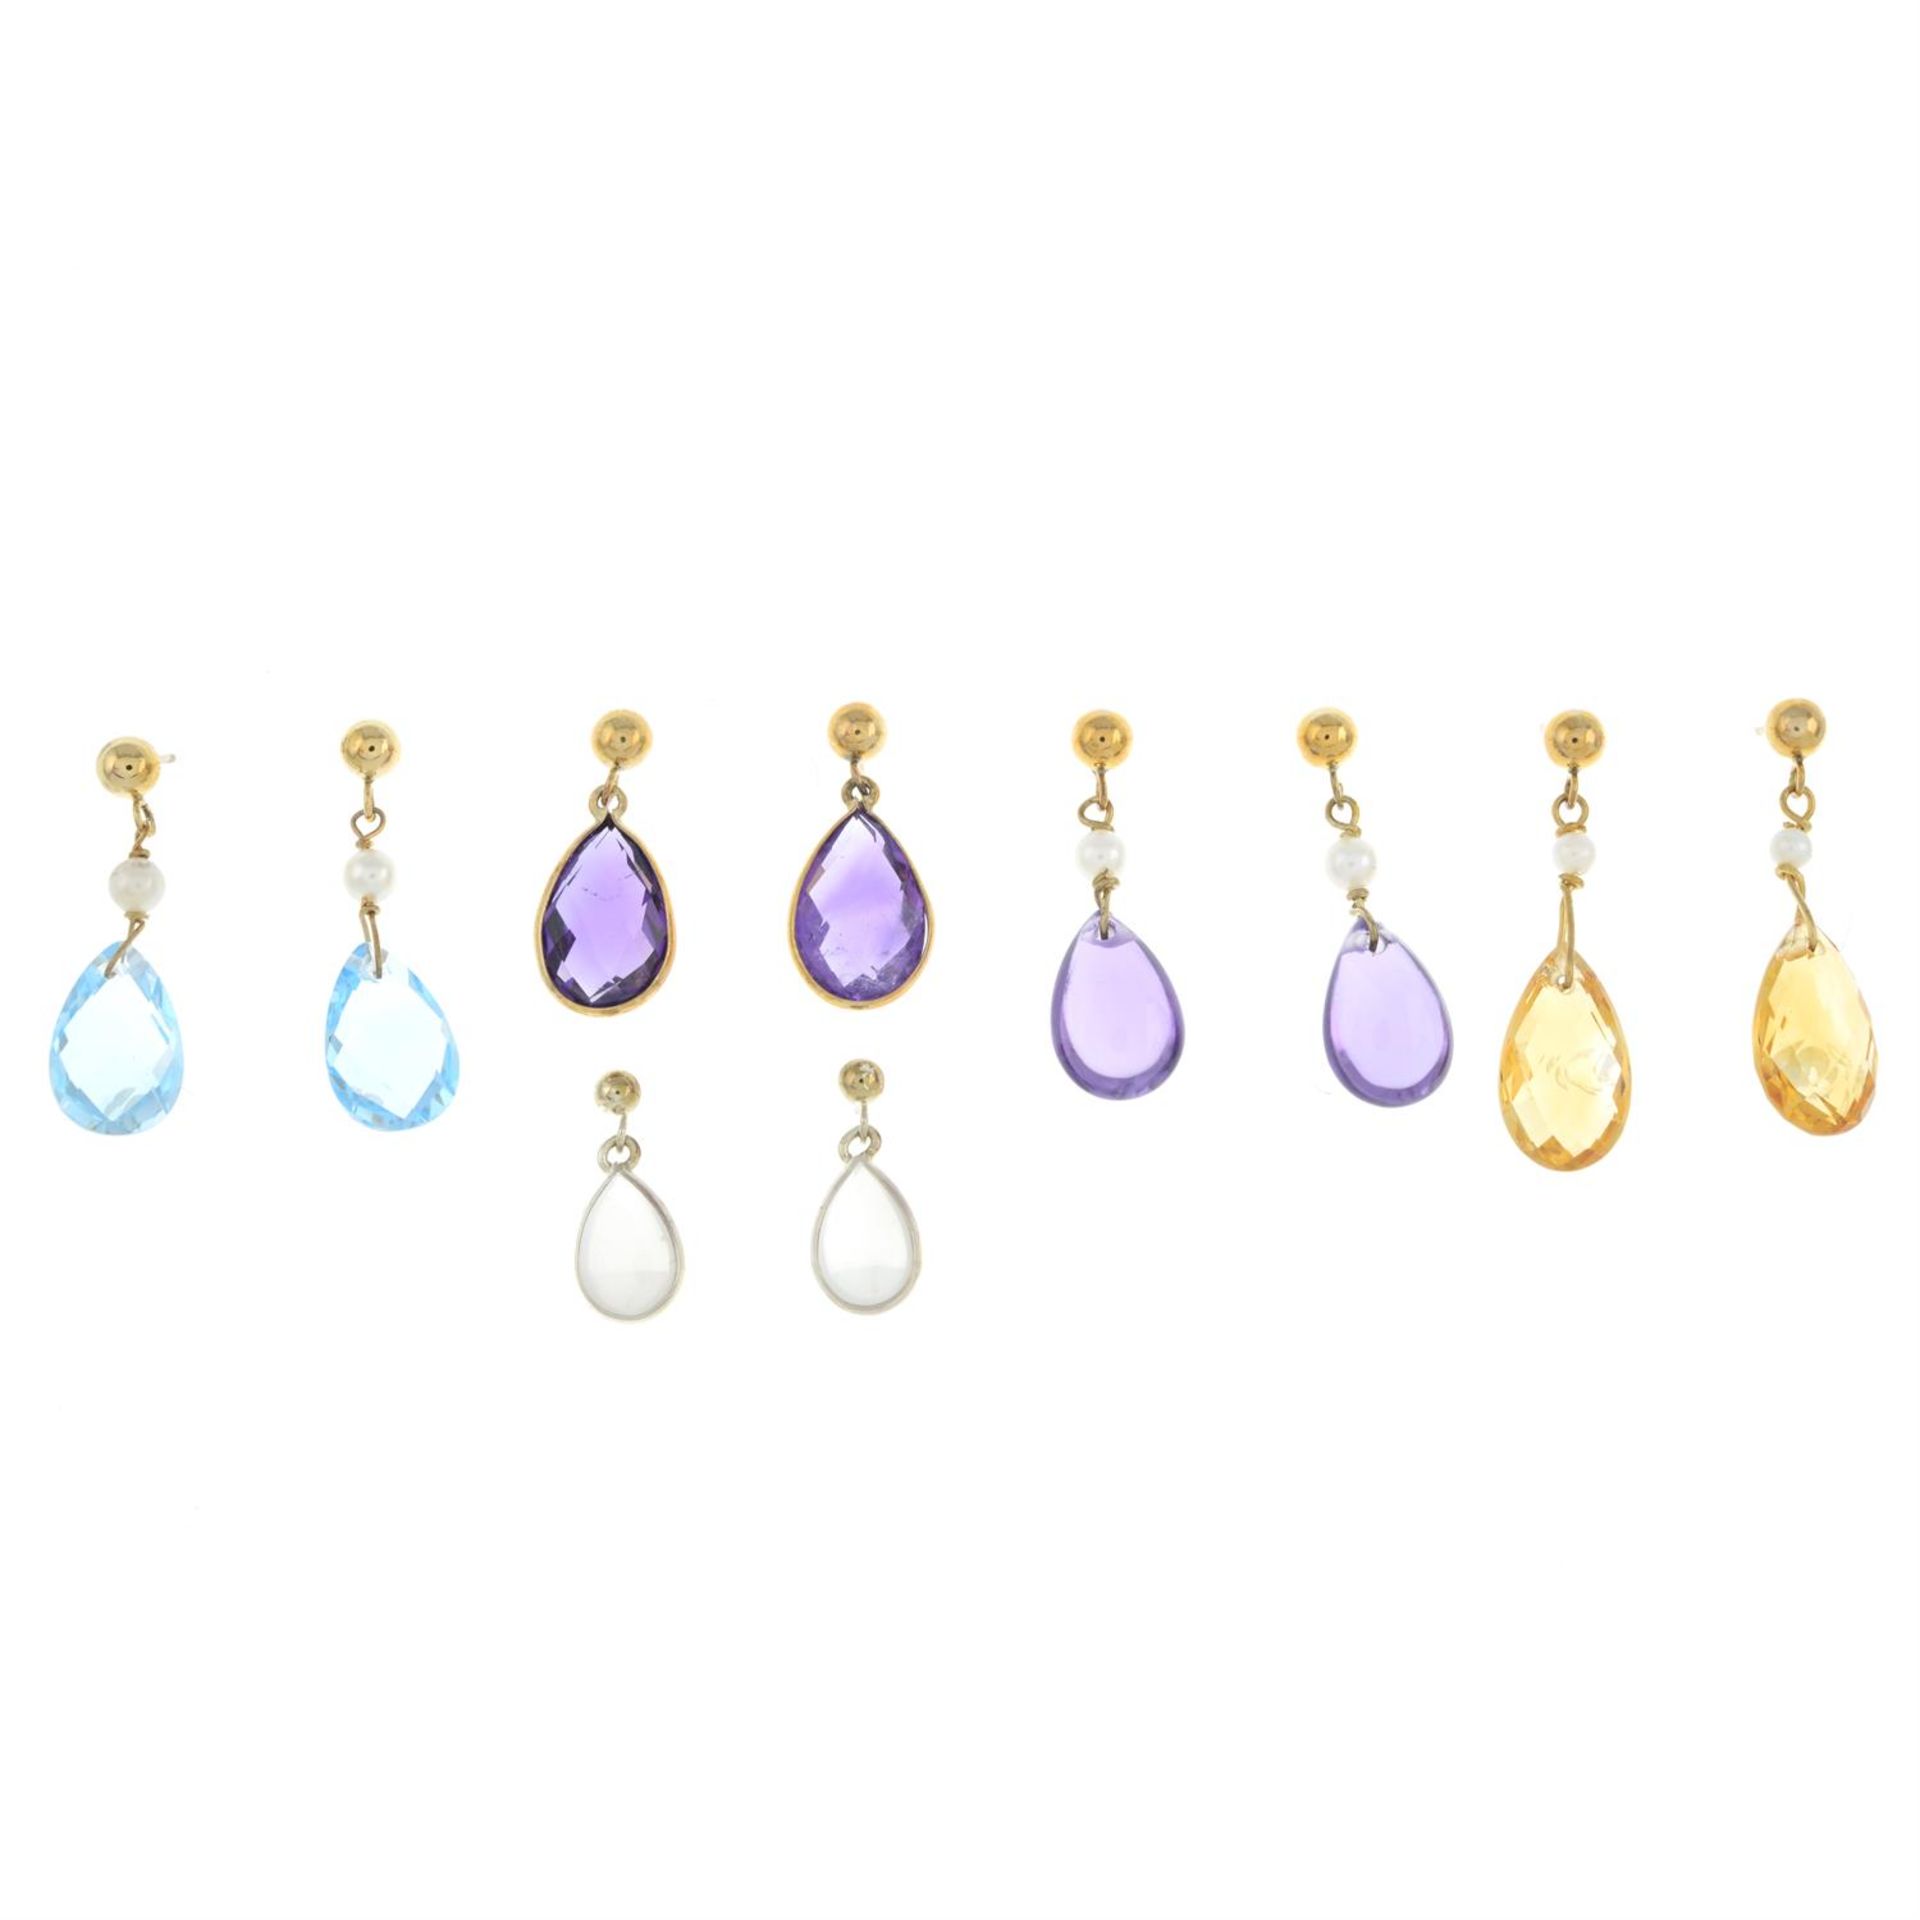 Five pairs of gem earrings